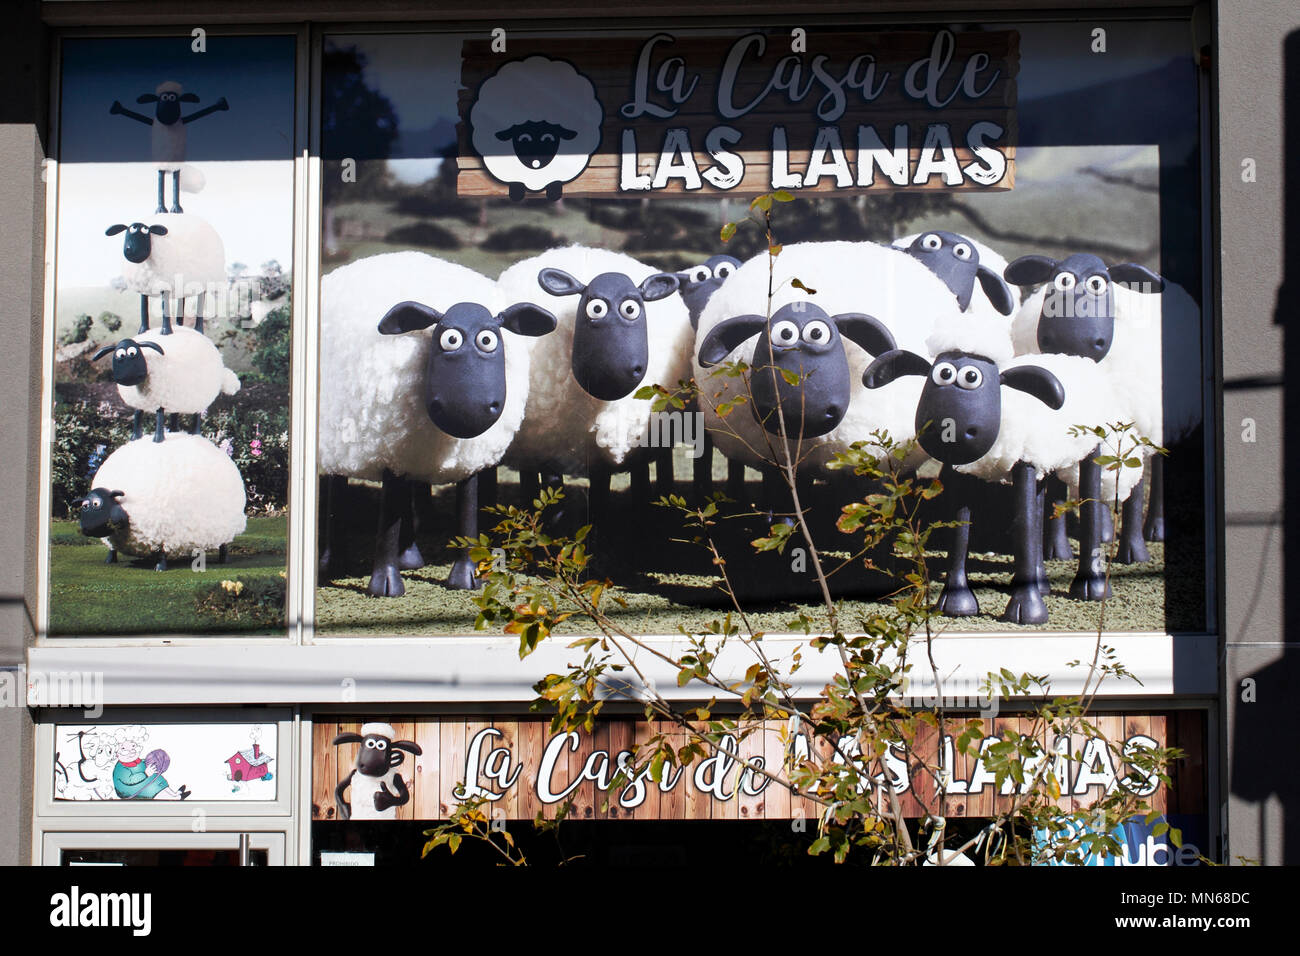 La Casa de las lanas. Das Haus der Wolle Stockfotografie - Alamy